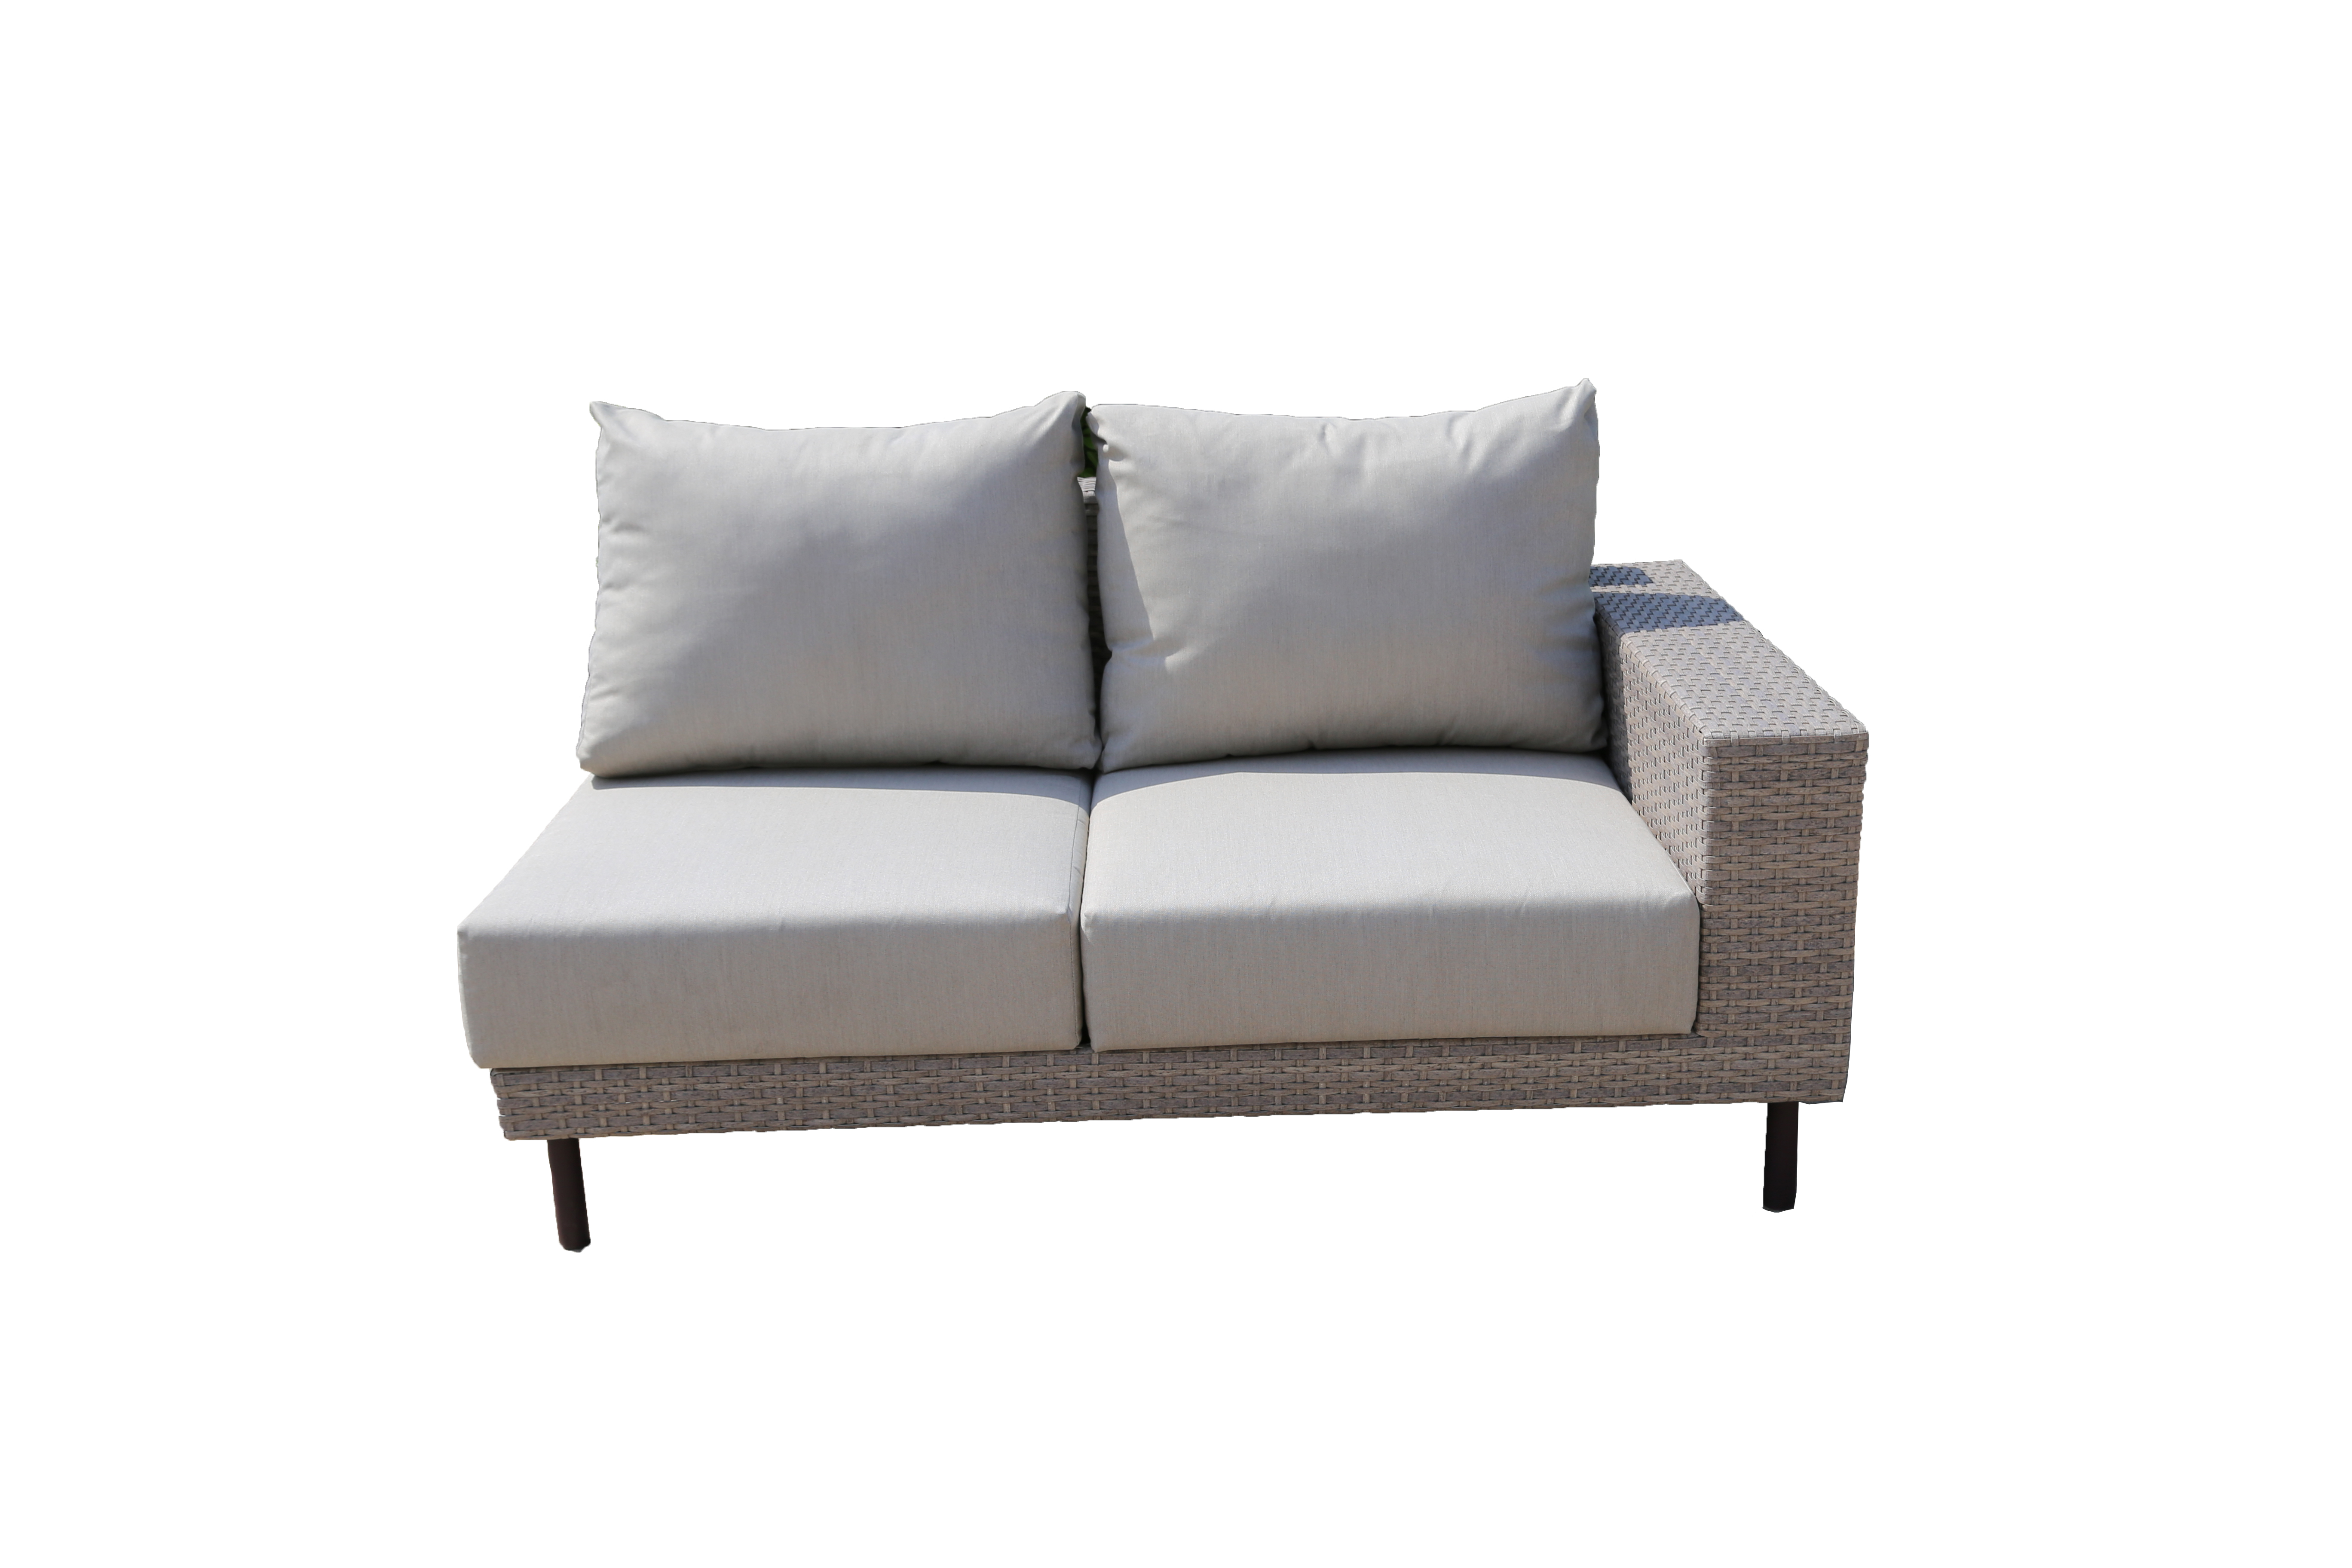 Marino corner sofa set of 4